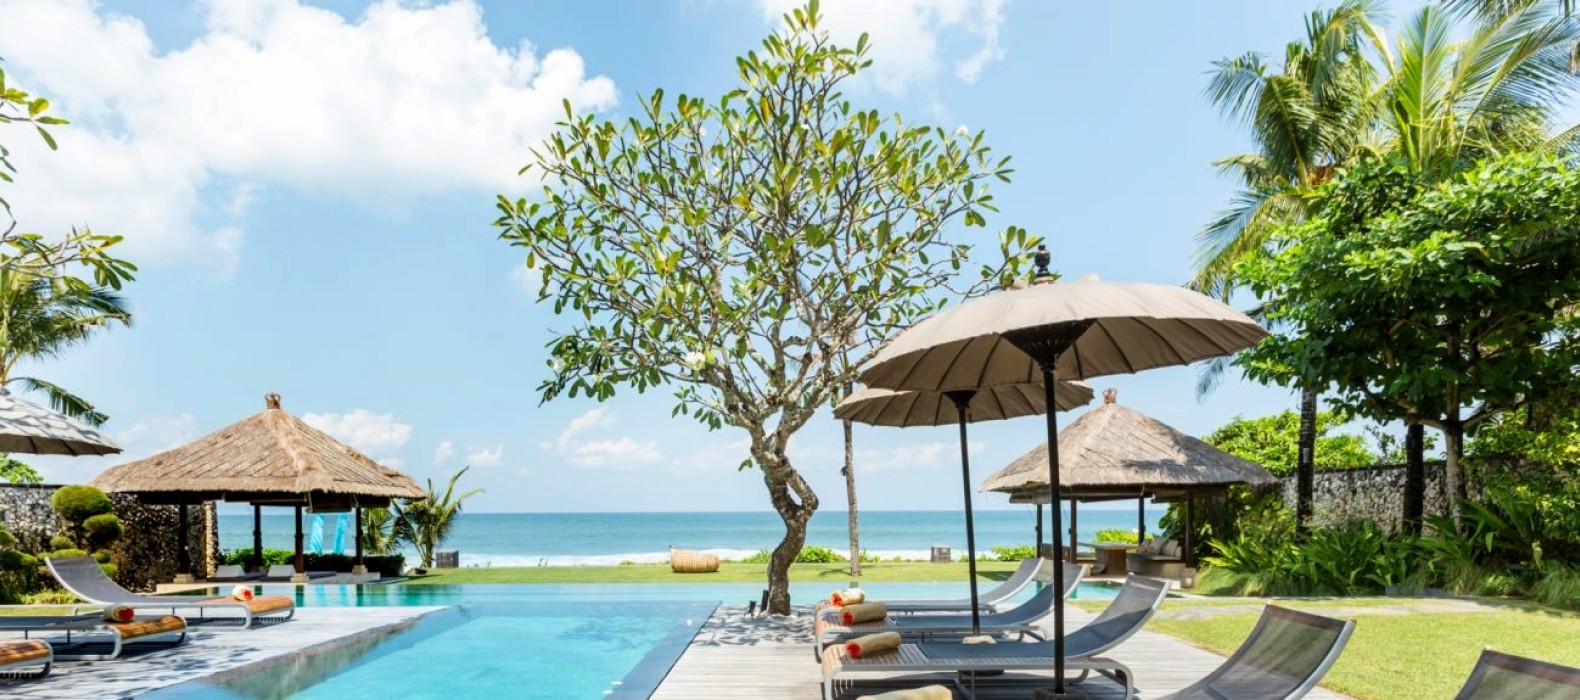 Sun loungers of Villa Nava in Bali